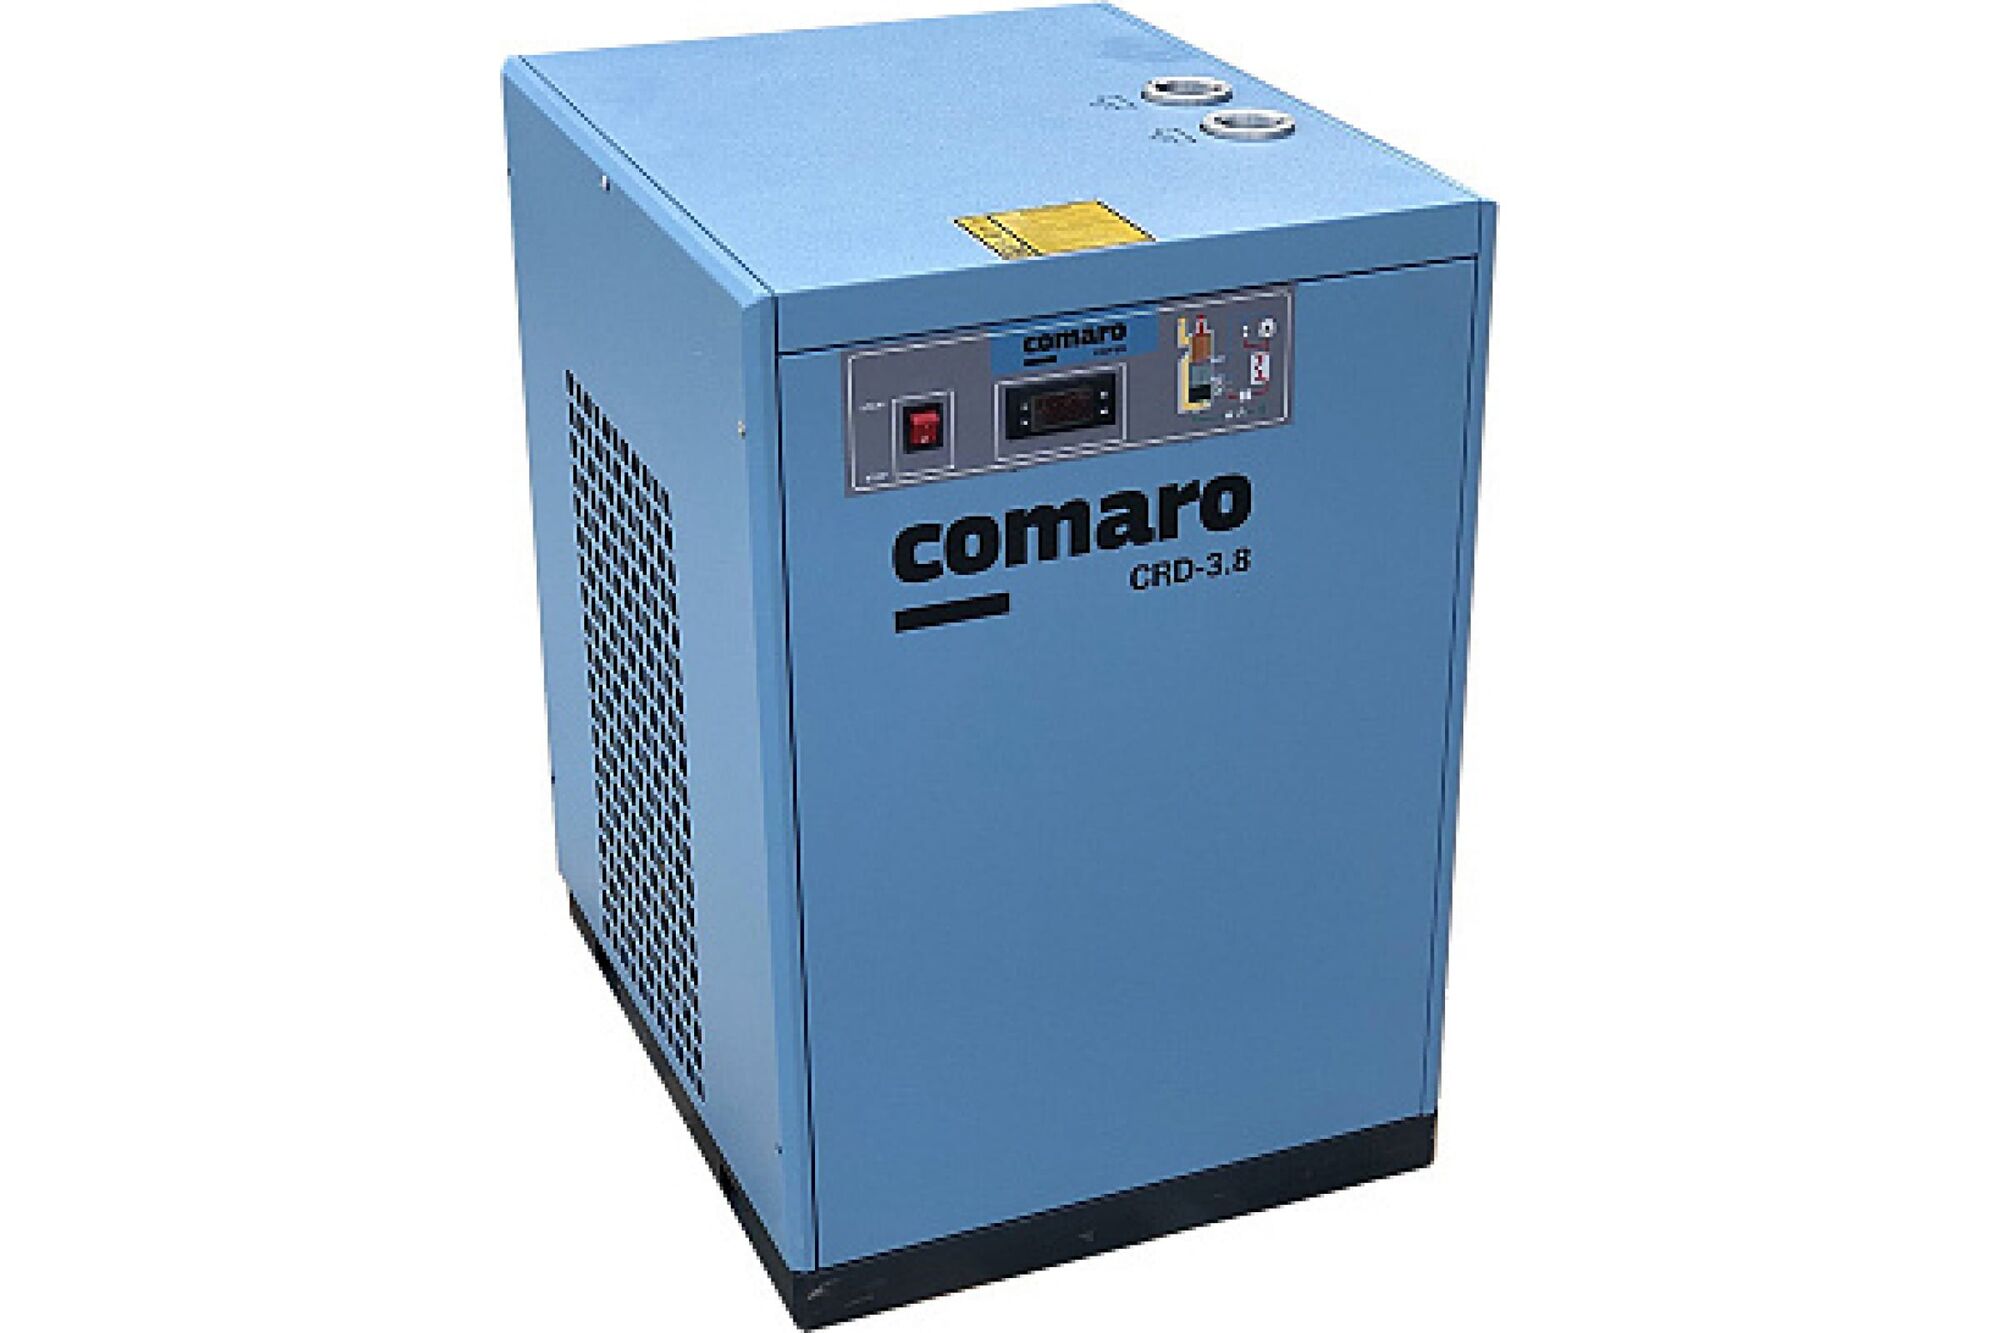 Рефрижераторный осушитель COMARO CRD-3.8 RD0038C Comaro